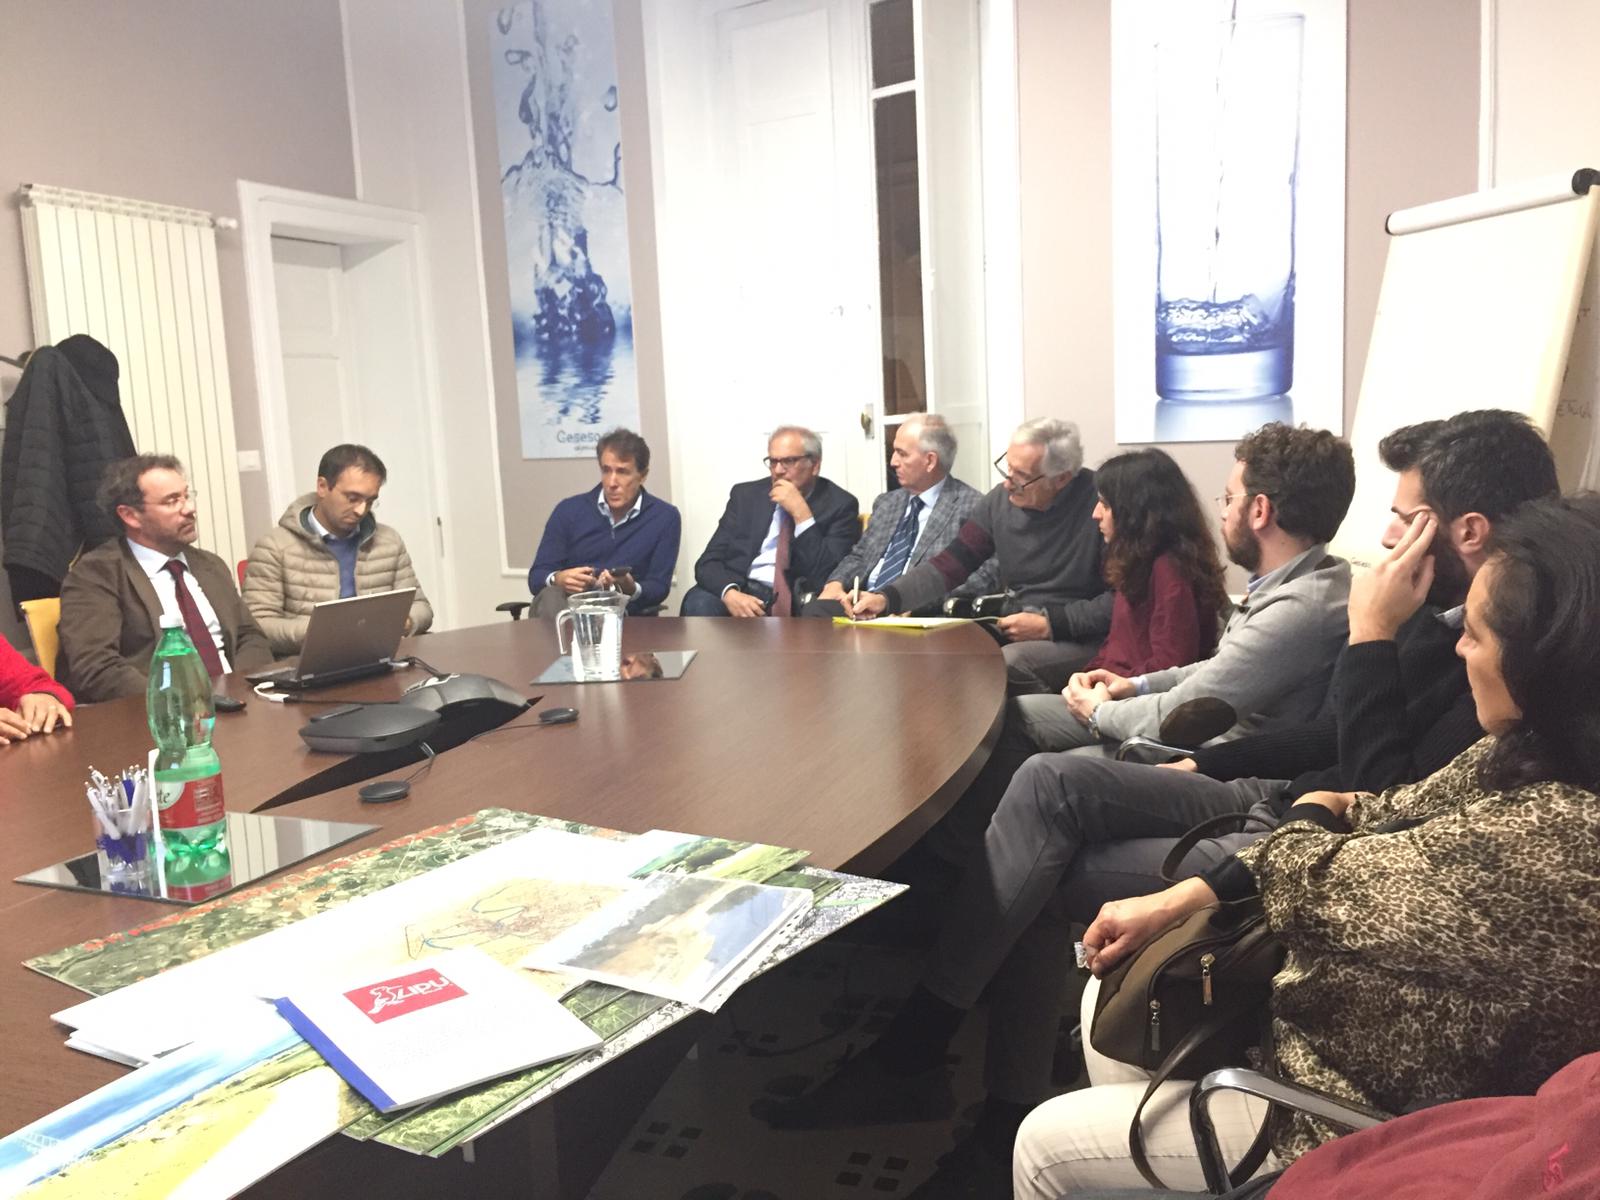 Benevento| Gesesa presenta il porgetto del depuratore alle associazioni ambientaliste